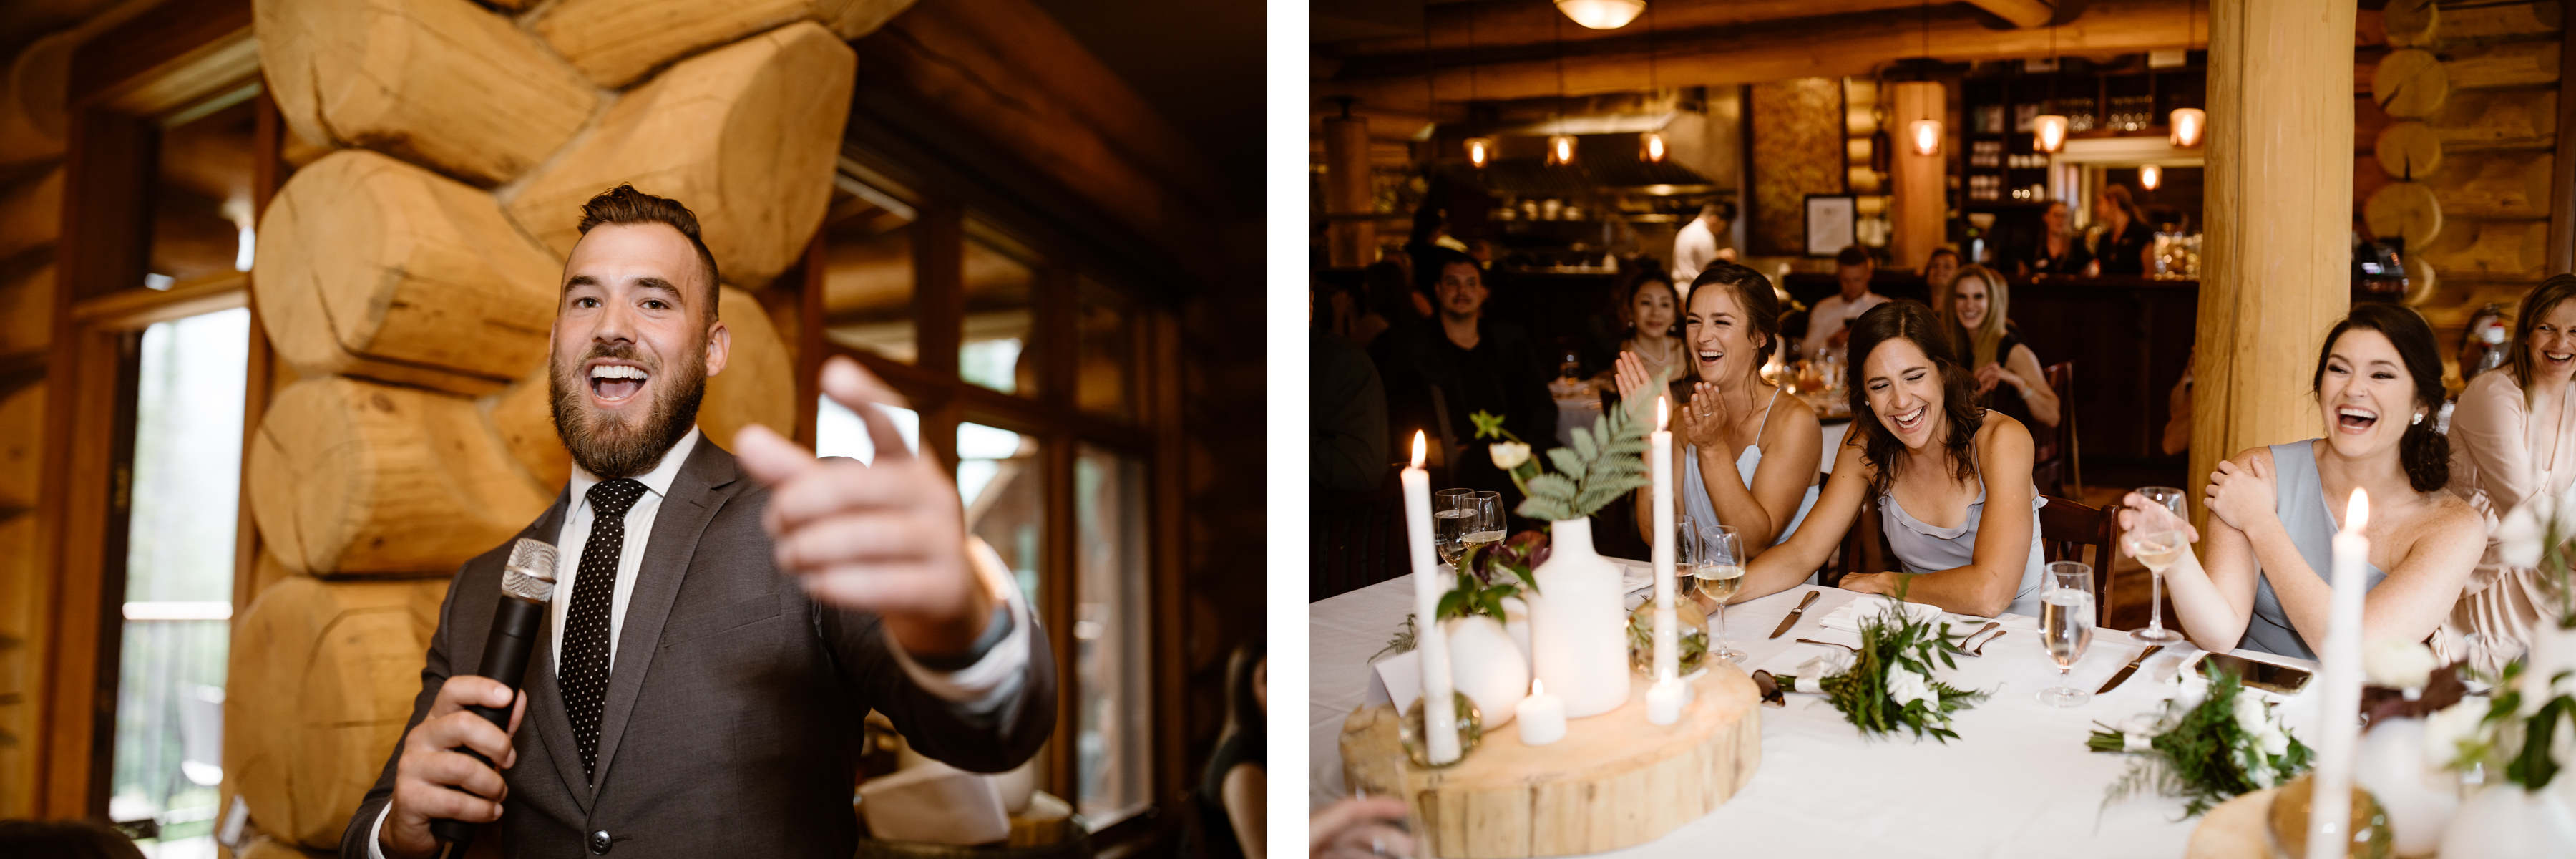 Fernie Wedding Photographers at Island Lake Lodge - Image 39